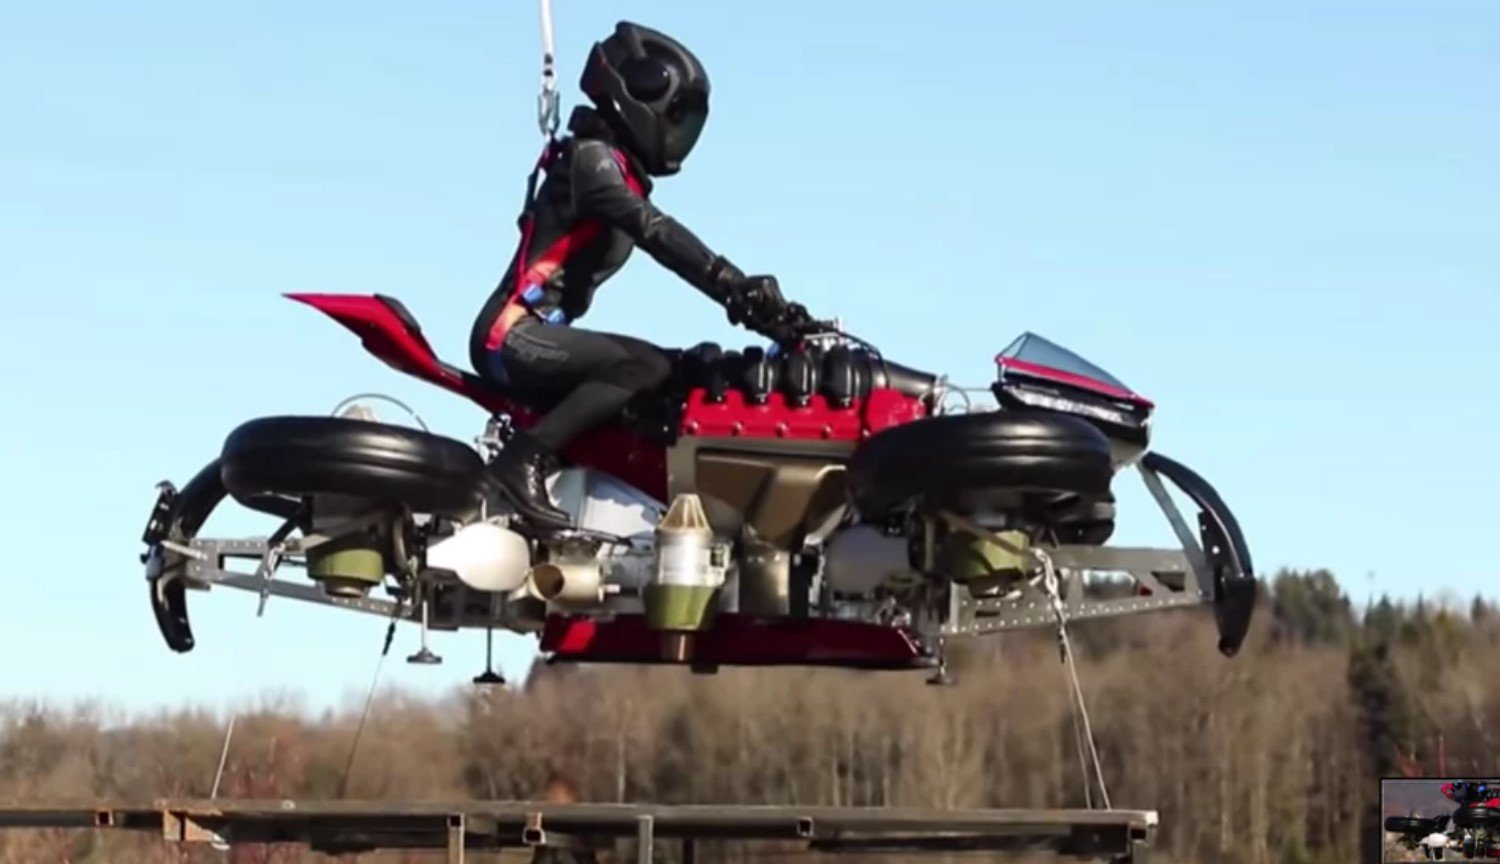 #vídeo | el Proyecto de carreras de la motocicleta Lazareth real — subió a un metro de altura